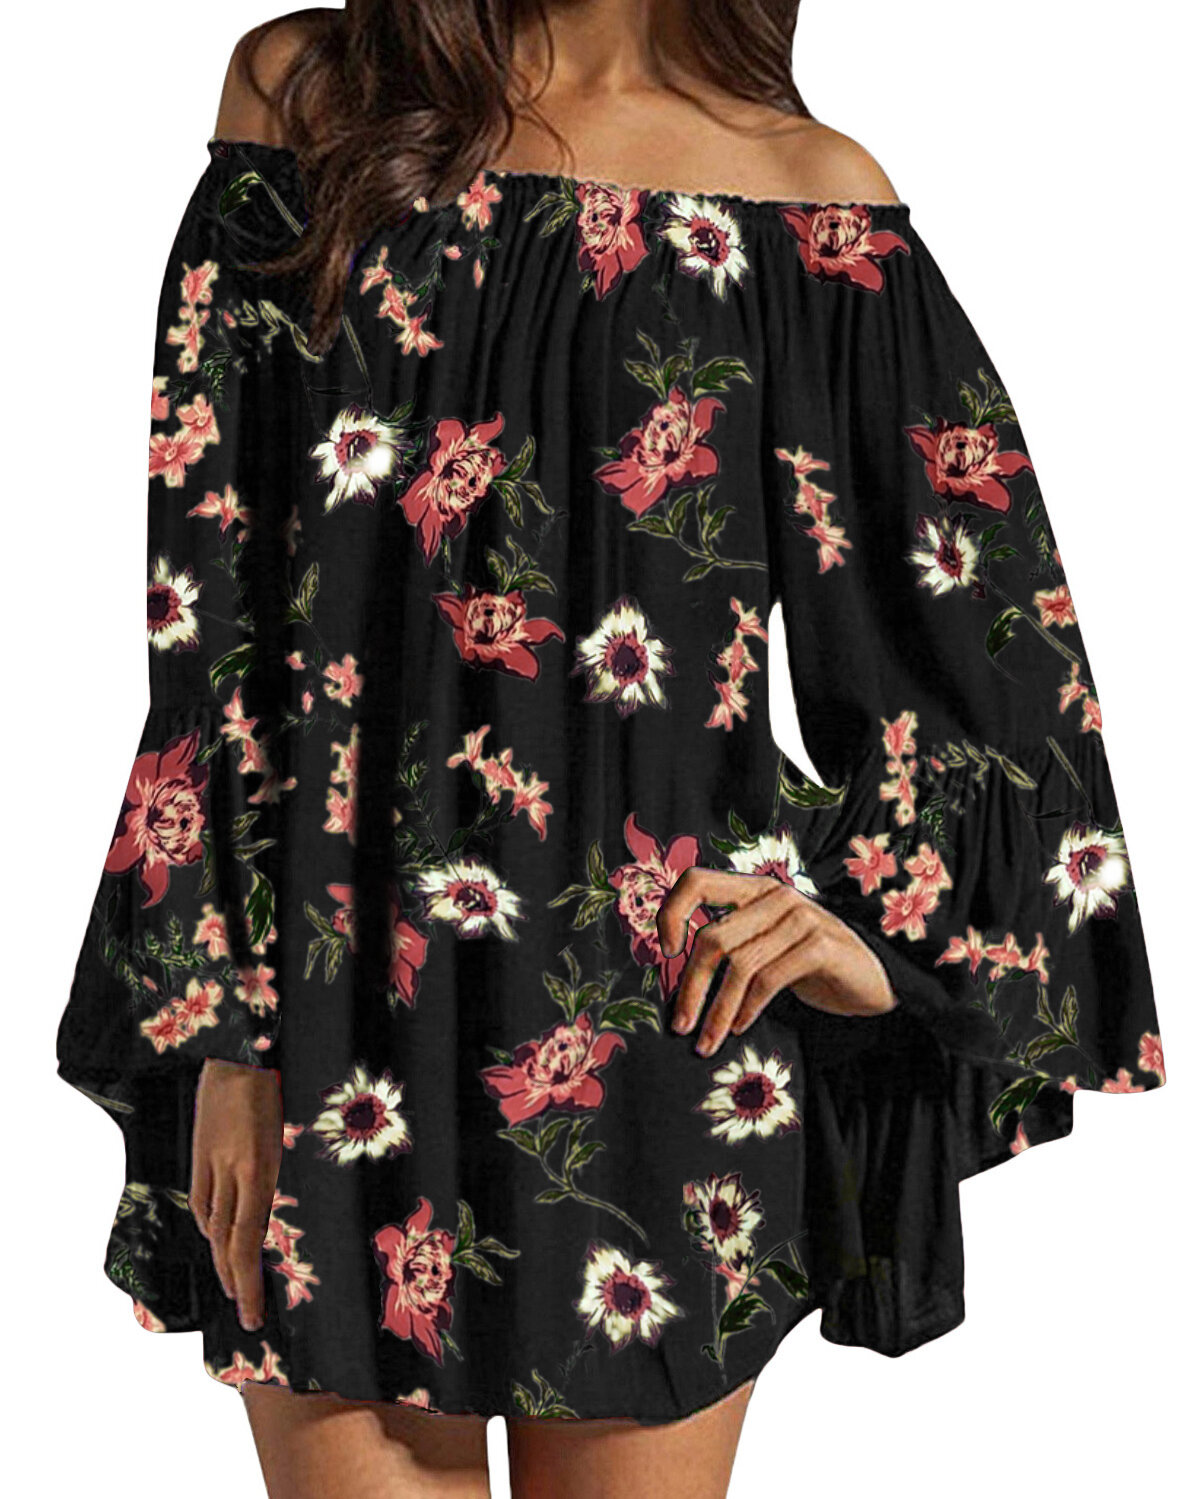 

Блузка с открытыми плечами с цветочным принтом и шифоном с оборками Mini Платье For Женское